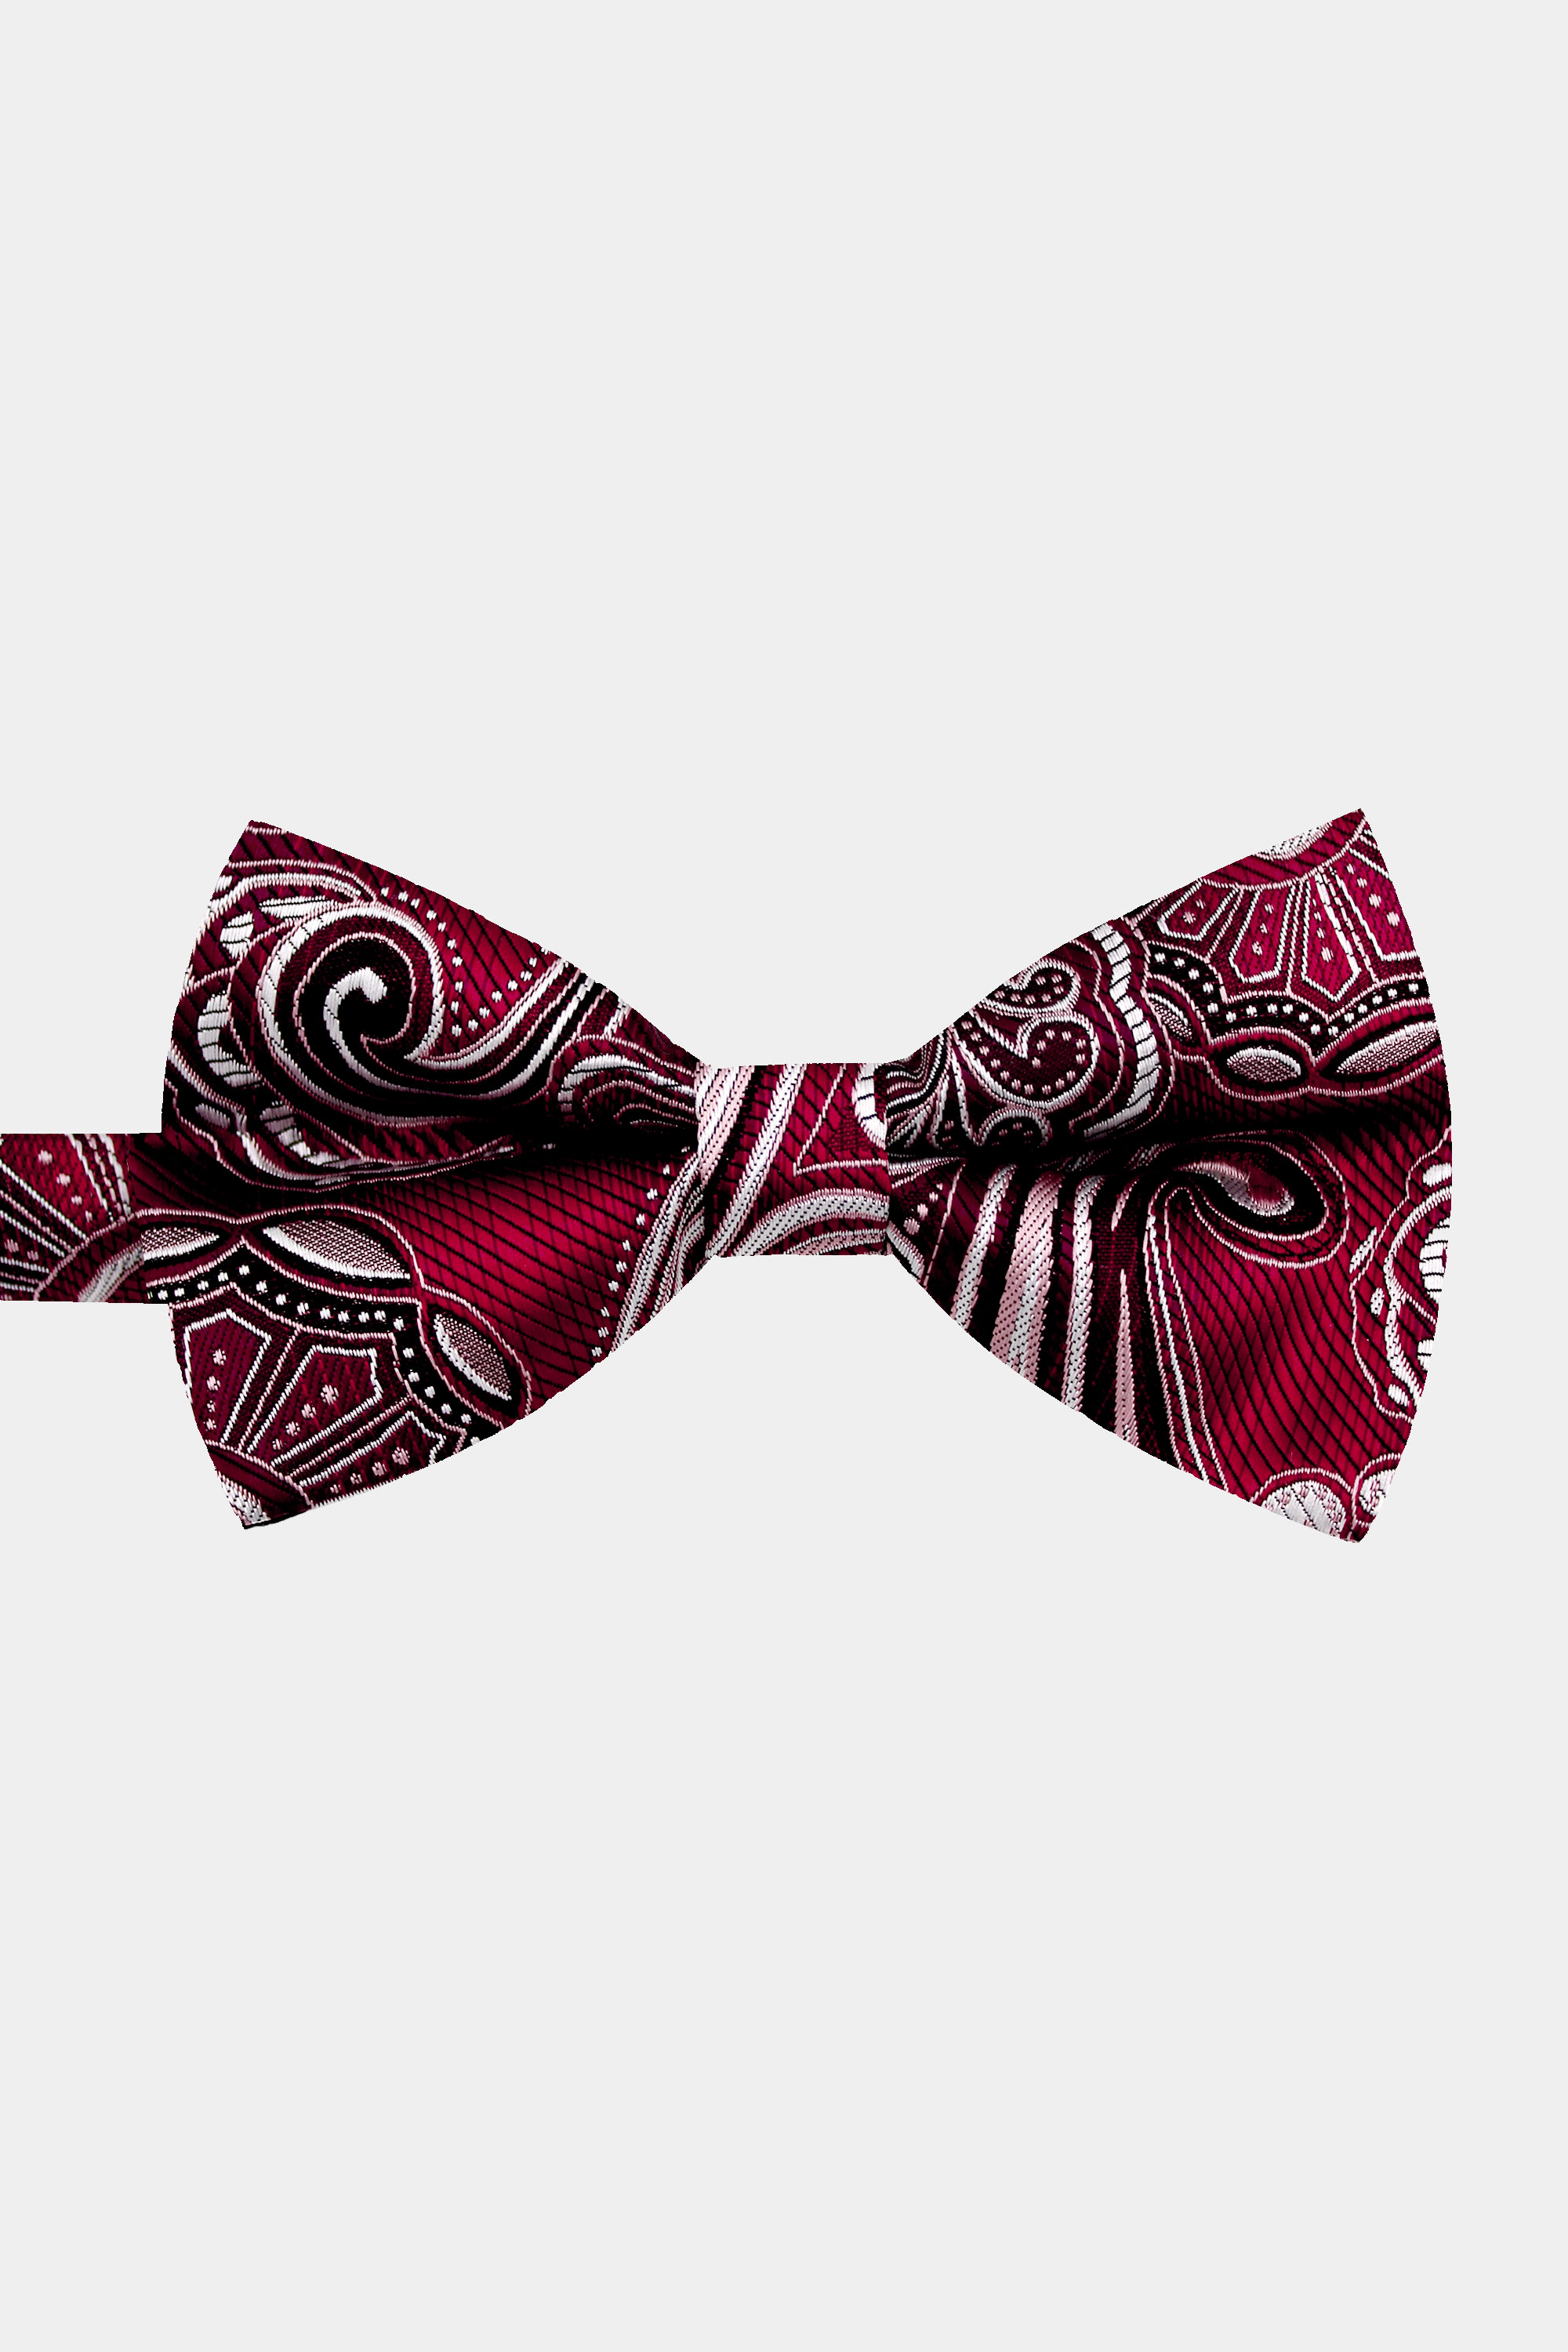 Maroon-Paisley-Bow-Tie-from-Gentlemansguru.com